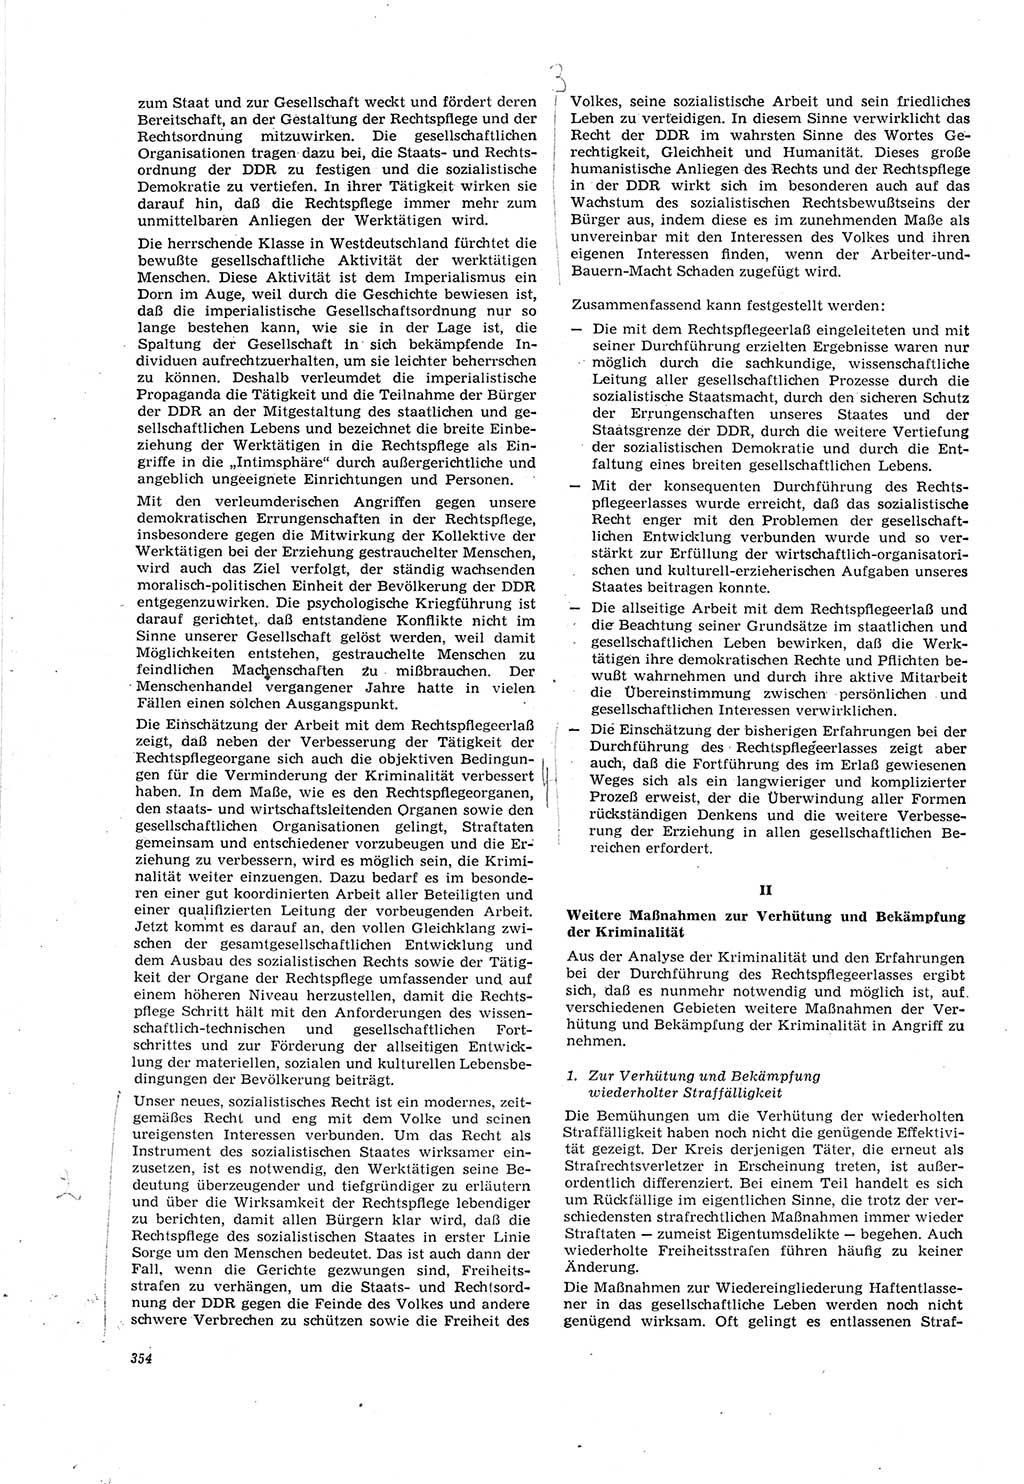 Neue Justiz (NJ), Zeitschrift für Recht und Rechtswissenschaft [Deutsche Demokratische Republik (DDR)], 20. Jahrgang 1966, Seite 354 (NJ DDR 1966, S. 354)